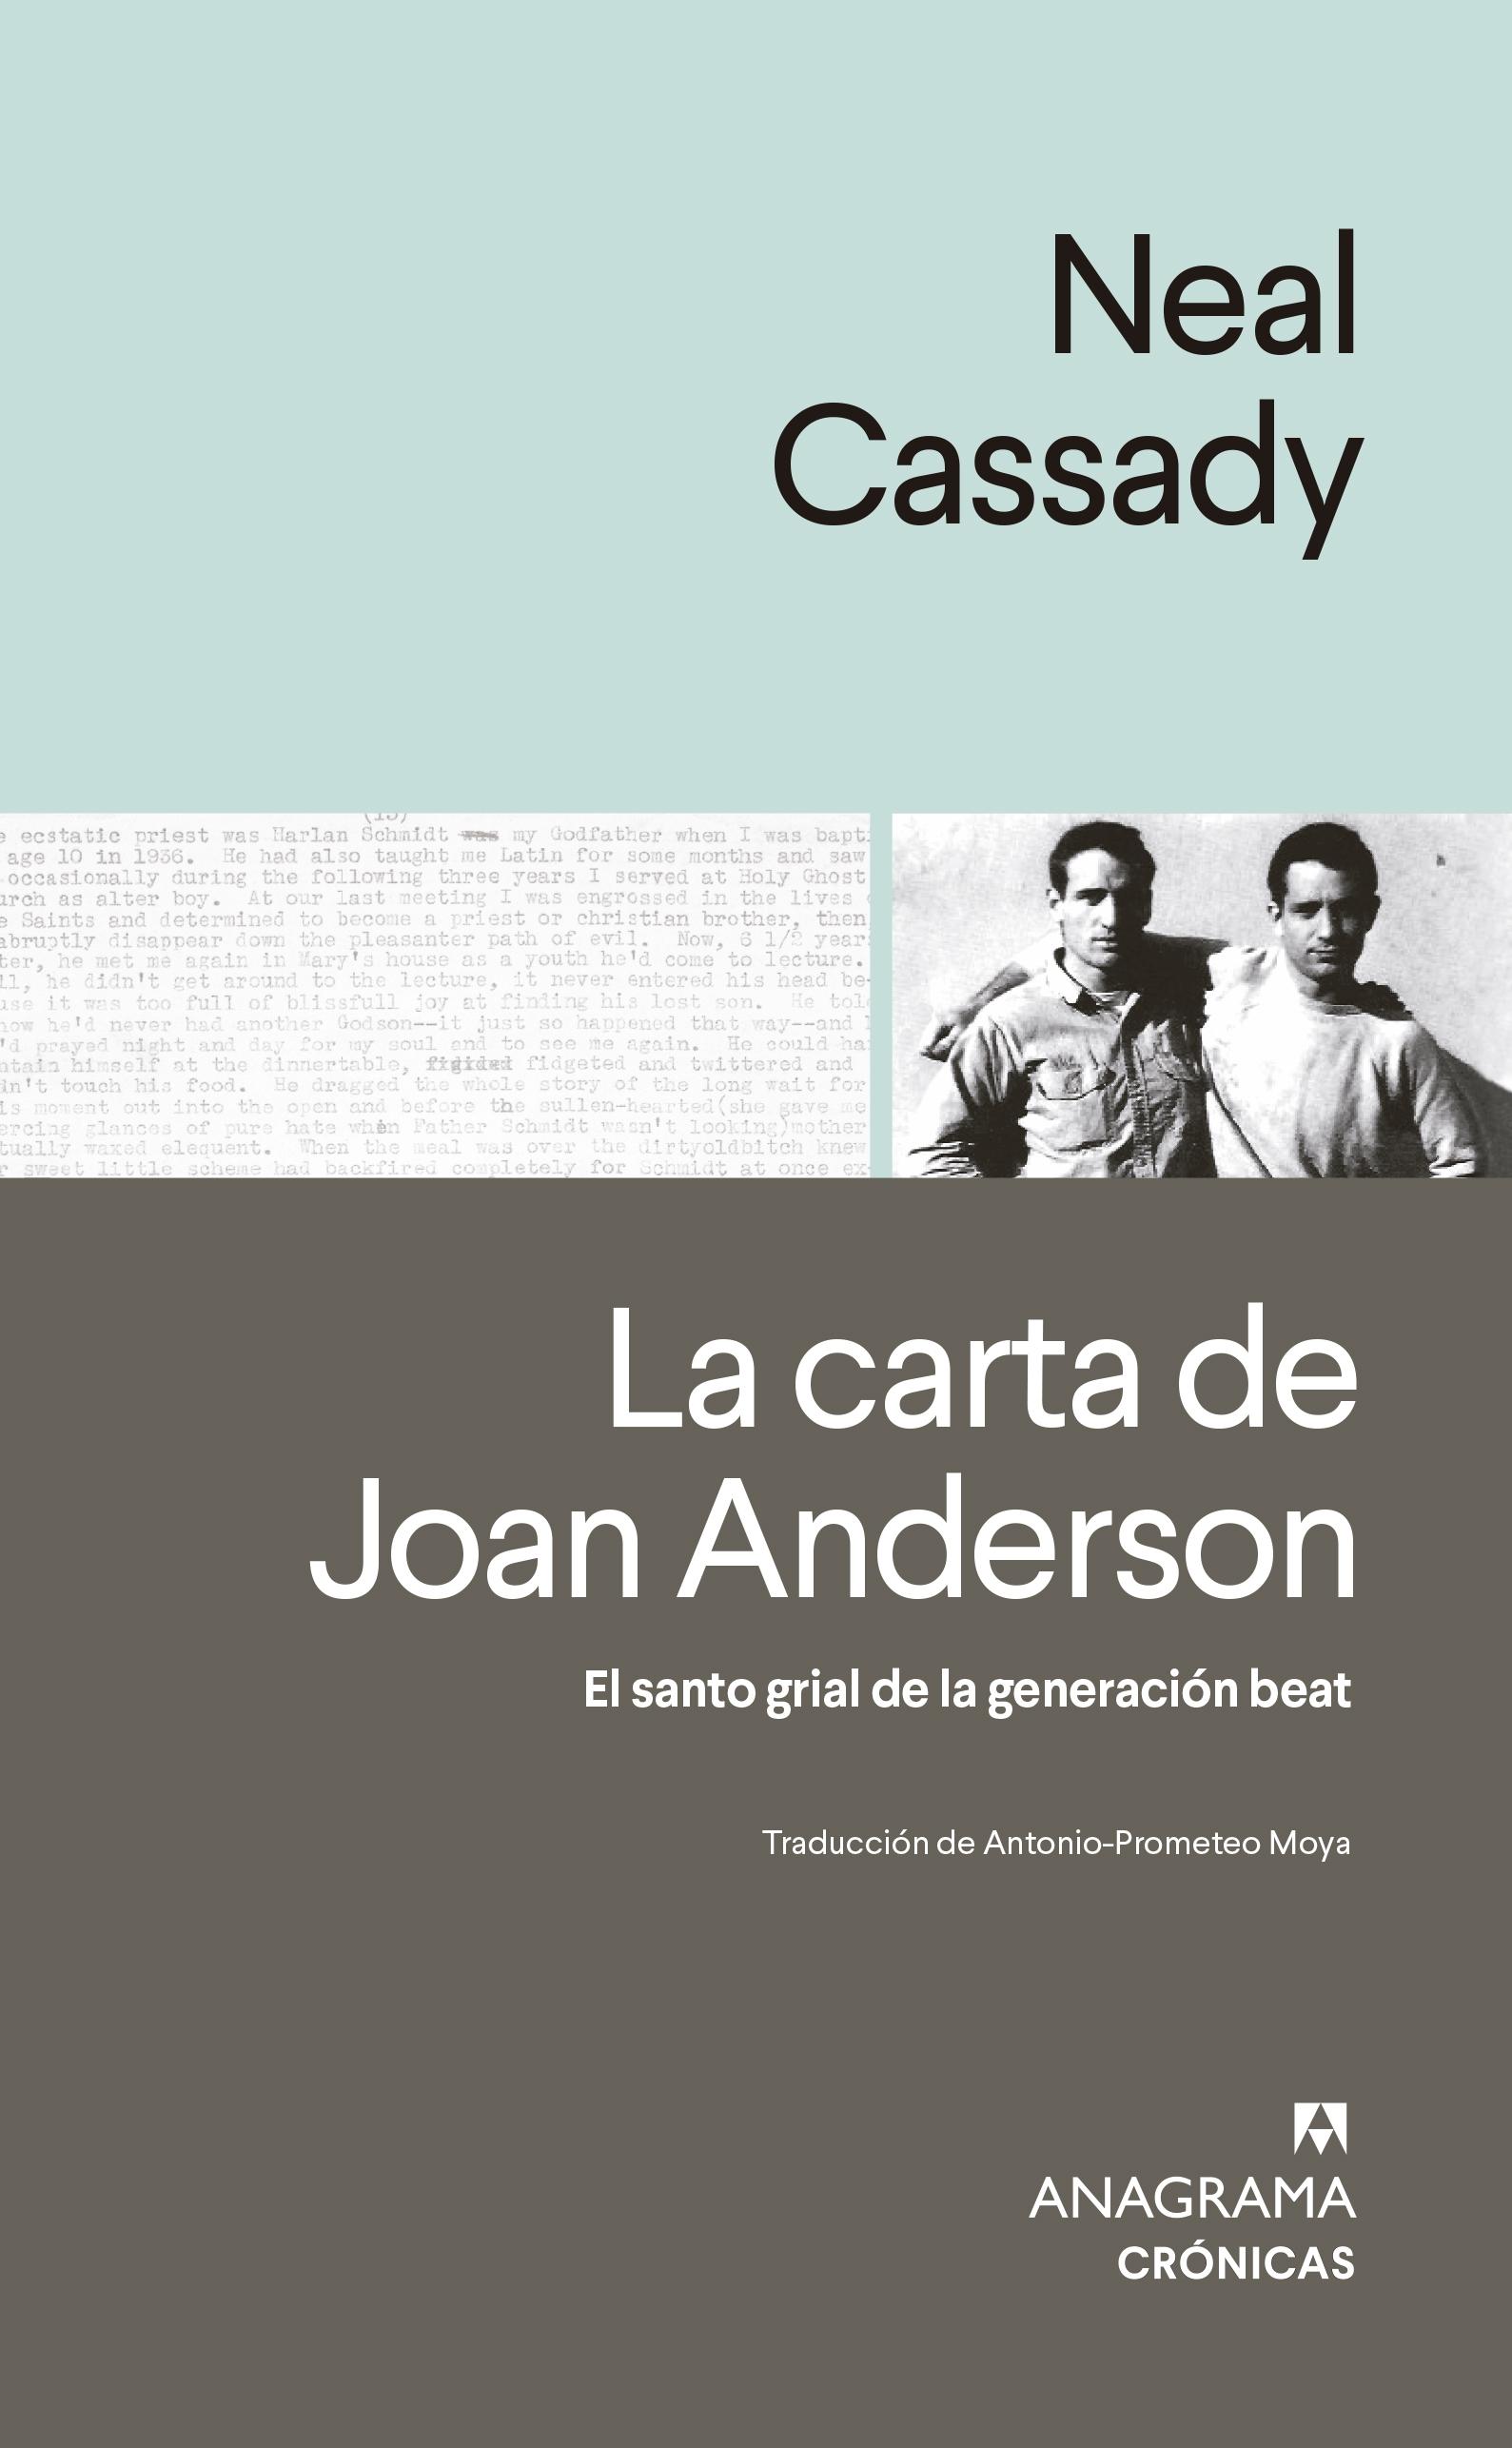 La Carta de Joan Anderson "El Santo Grial de la Generación Beat". 